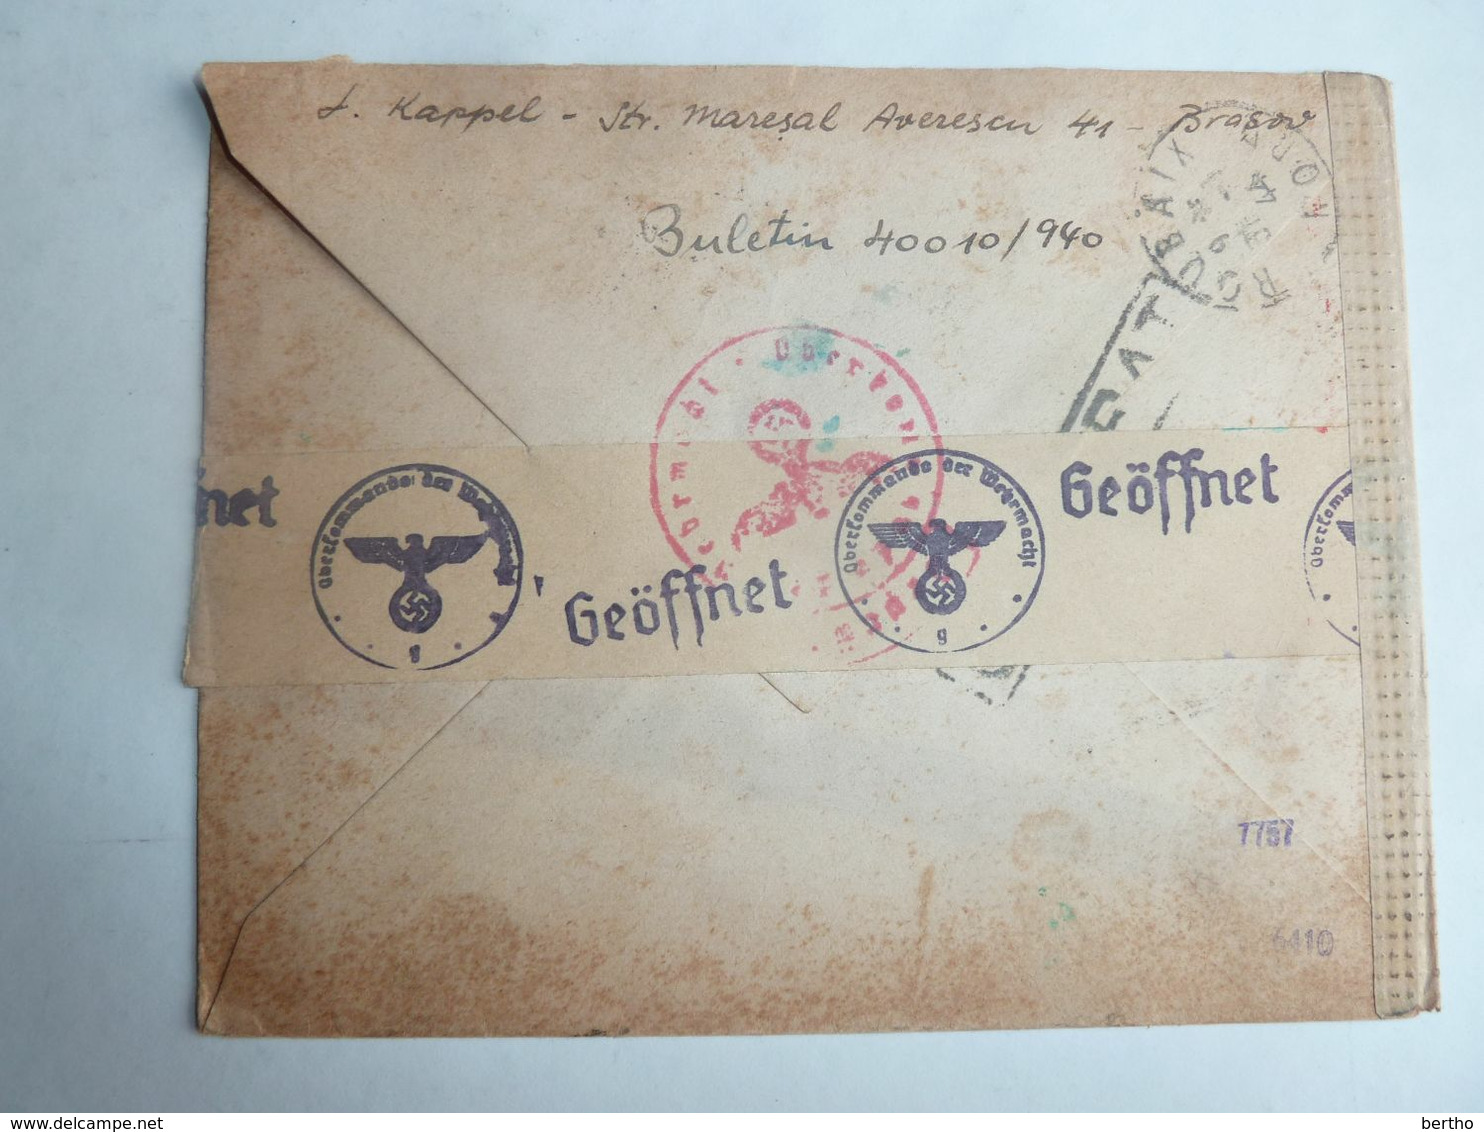 Lettre Recommandée De 1944, De Roumanie Pour La France, Ouverte Et Controlée Par L'Oberkommando Der Wehrmacht (O.K.W.) - World War 2 Letters